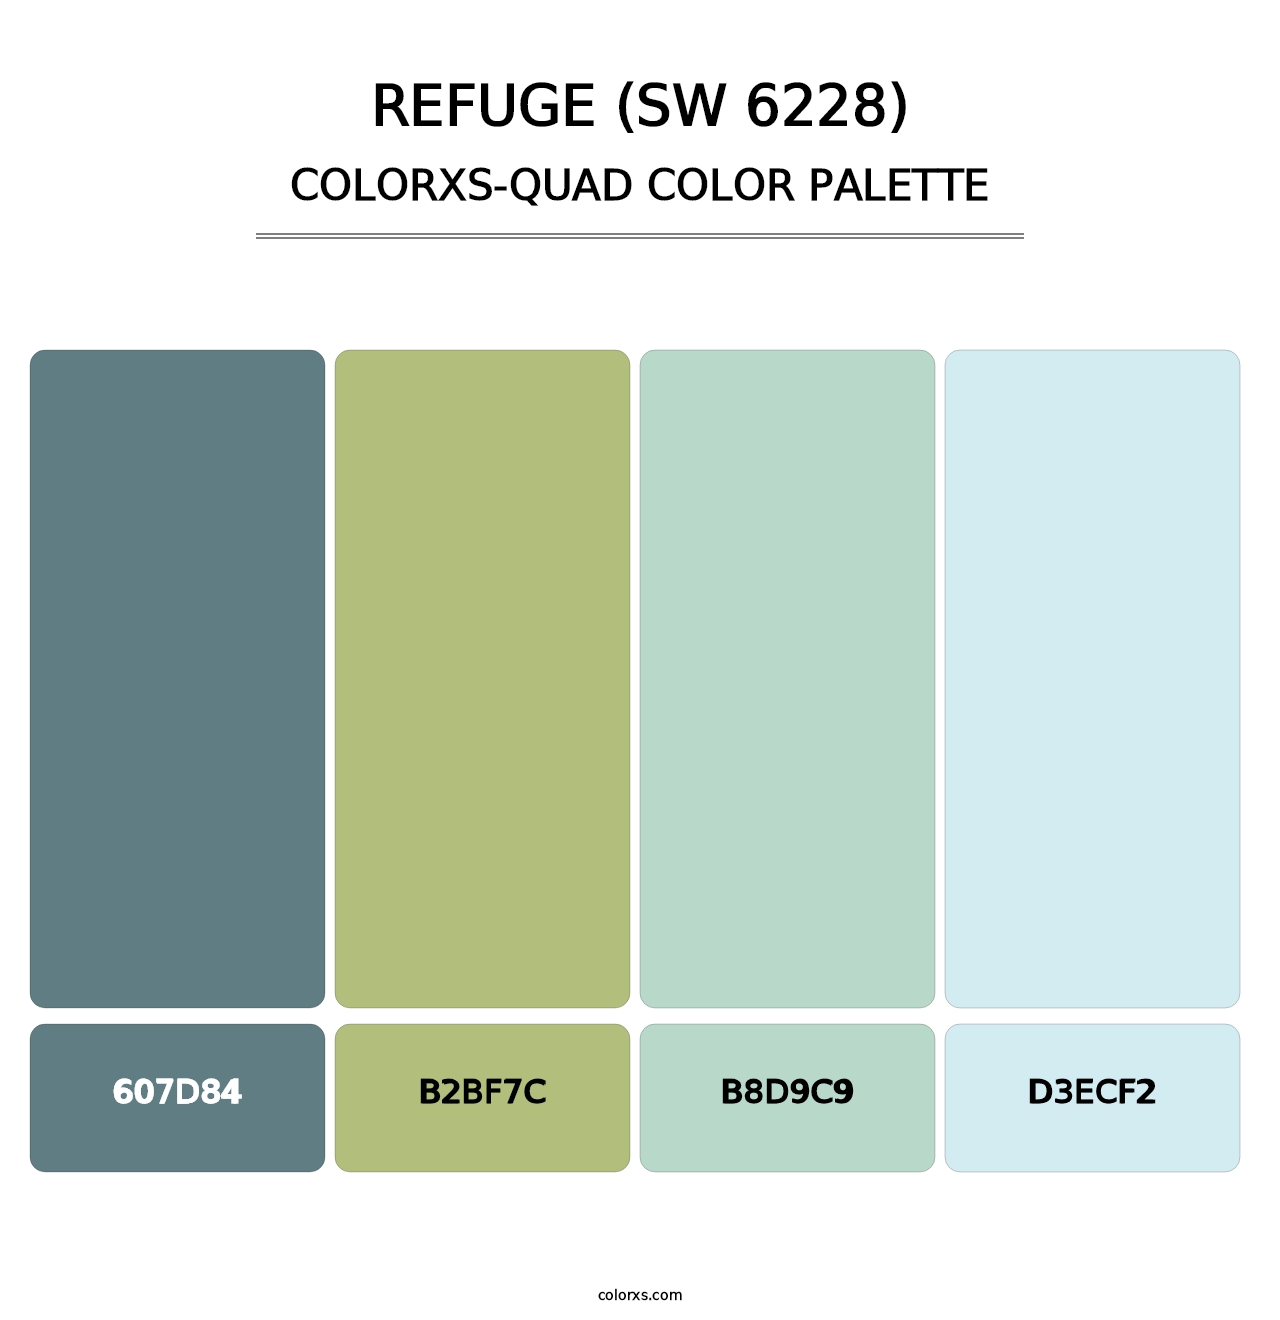 Refuge (SW 6228) - Colorxs Quad Palette